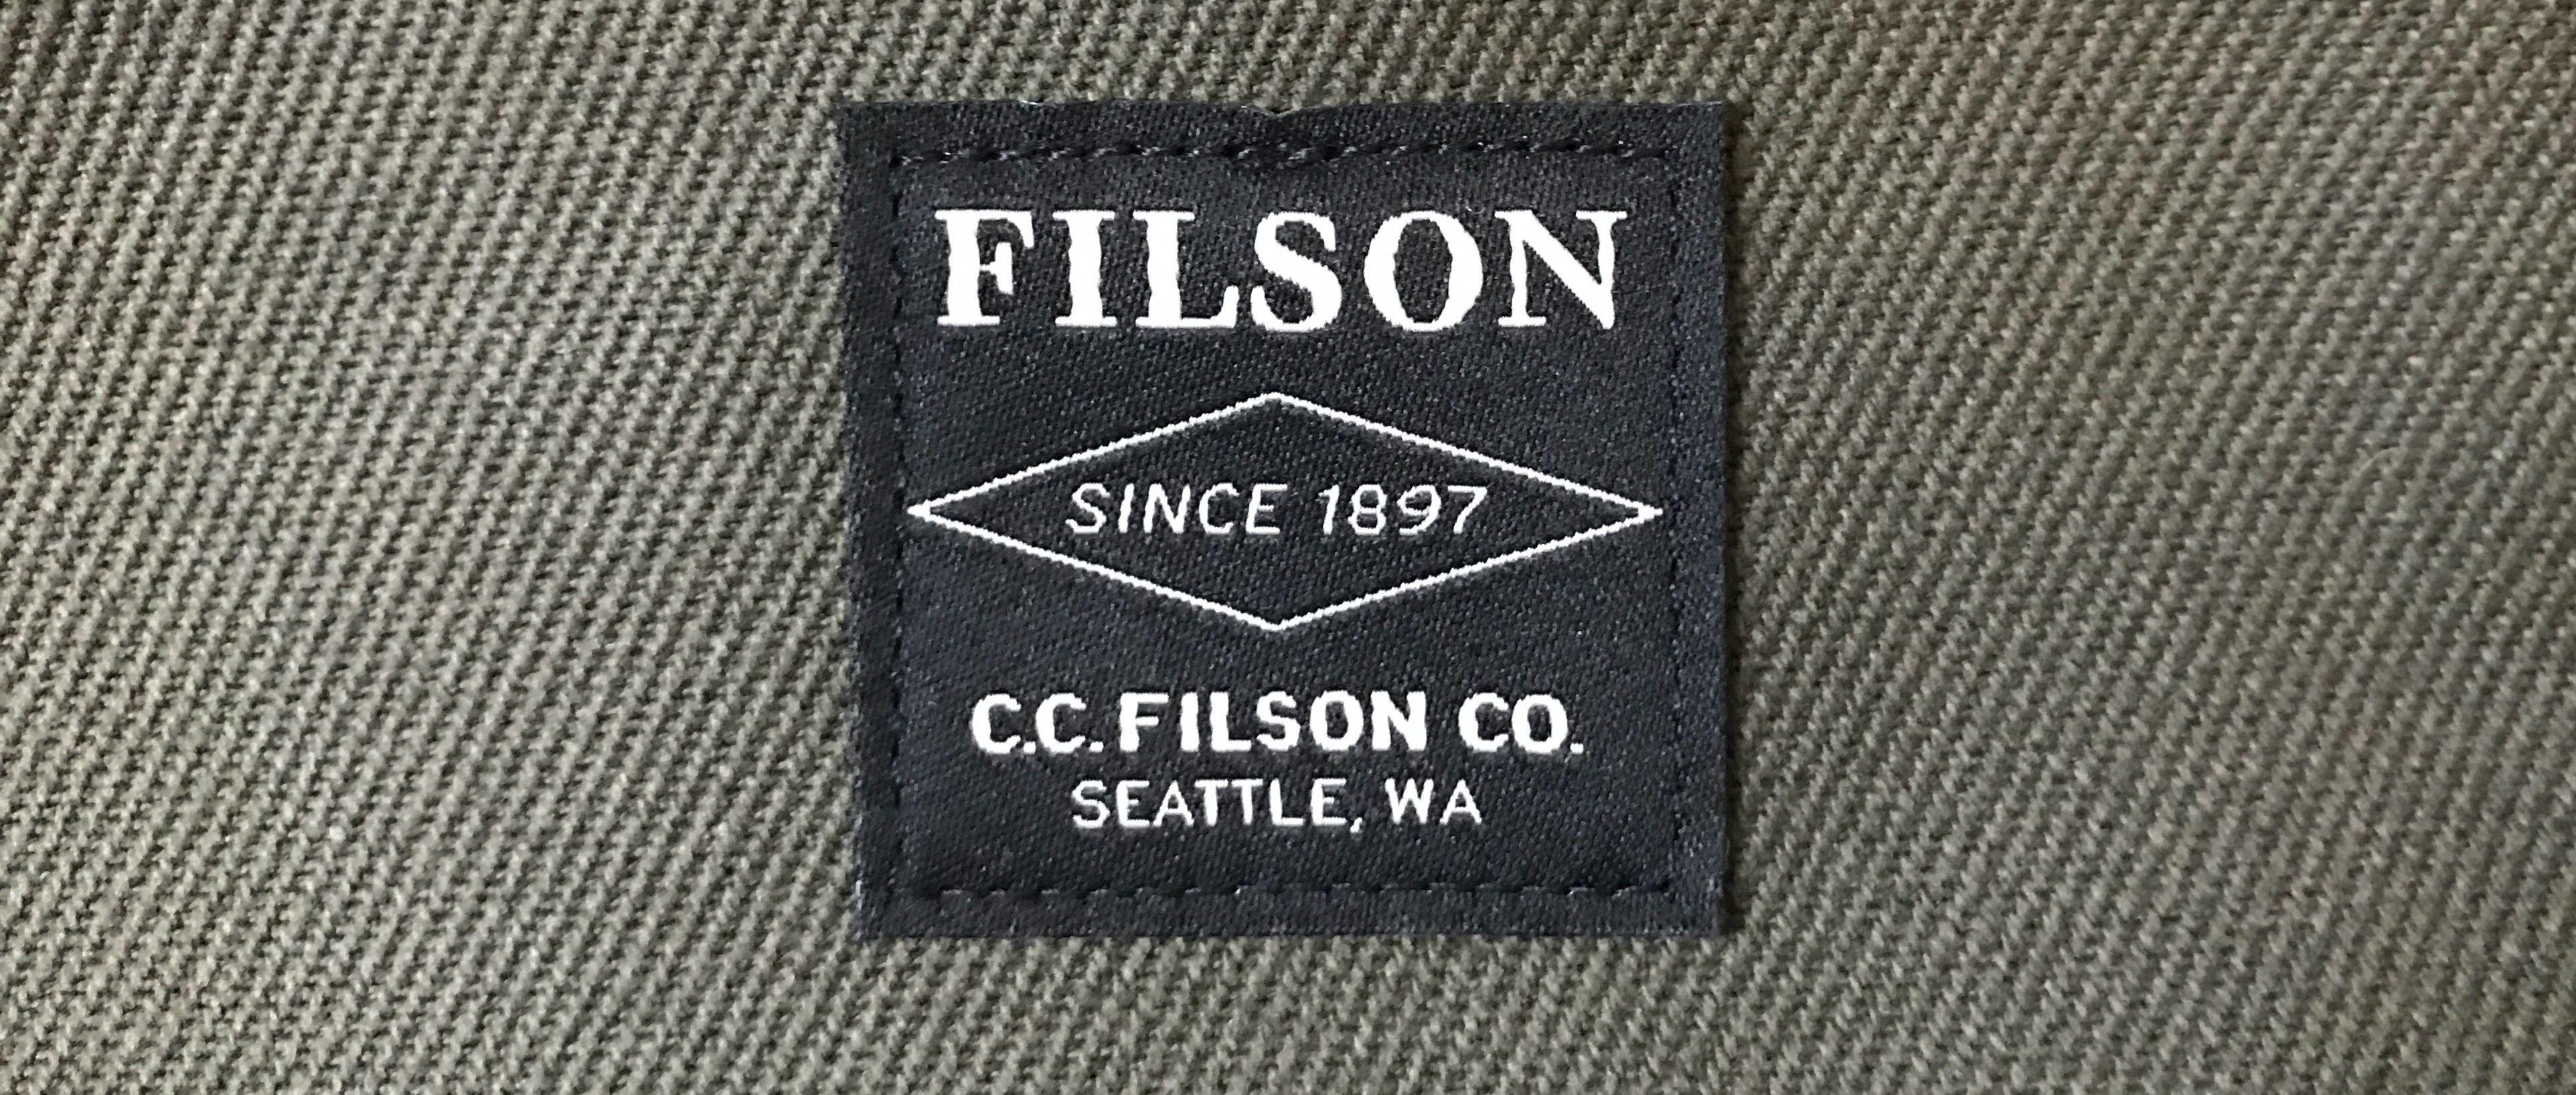 Filson Logo - The Filson Original Briefcase – The Brooks Review